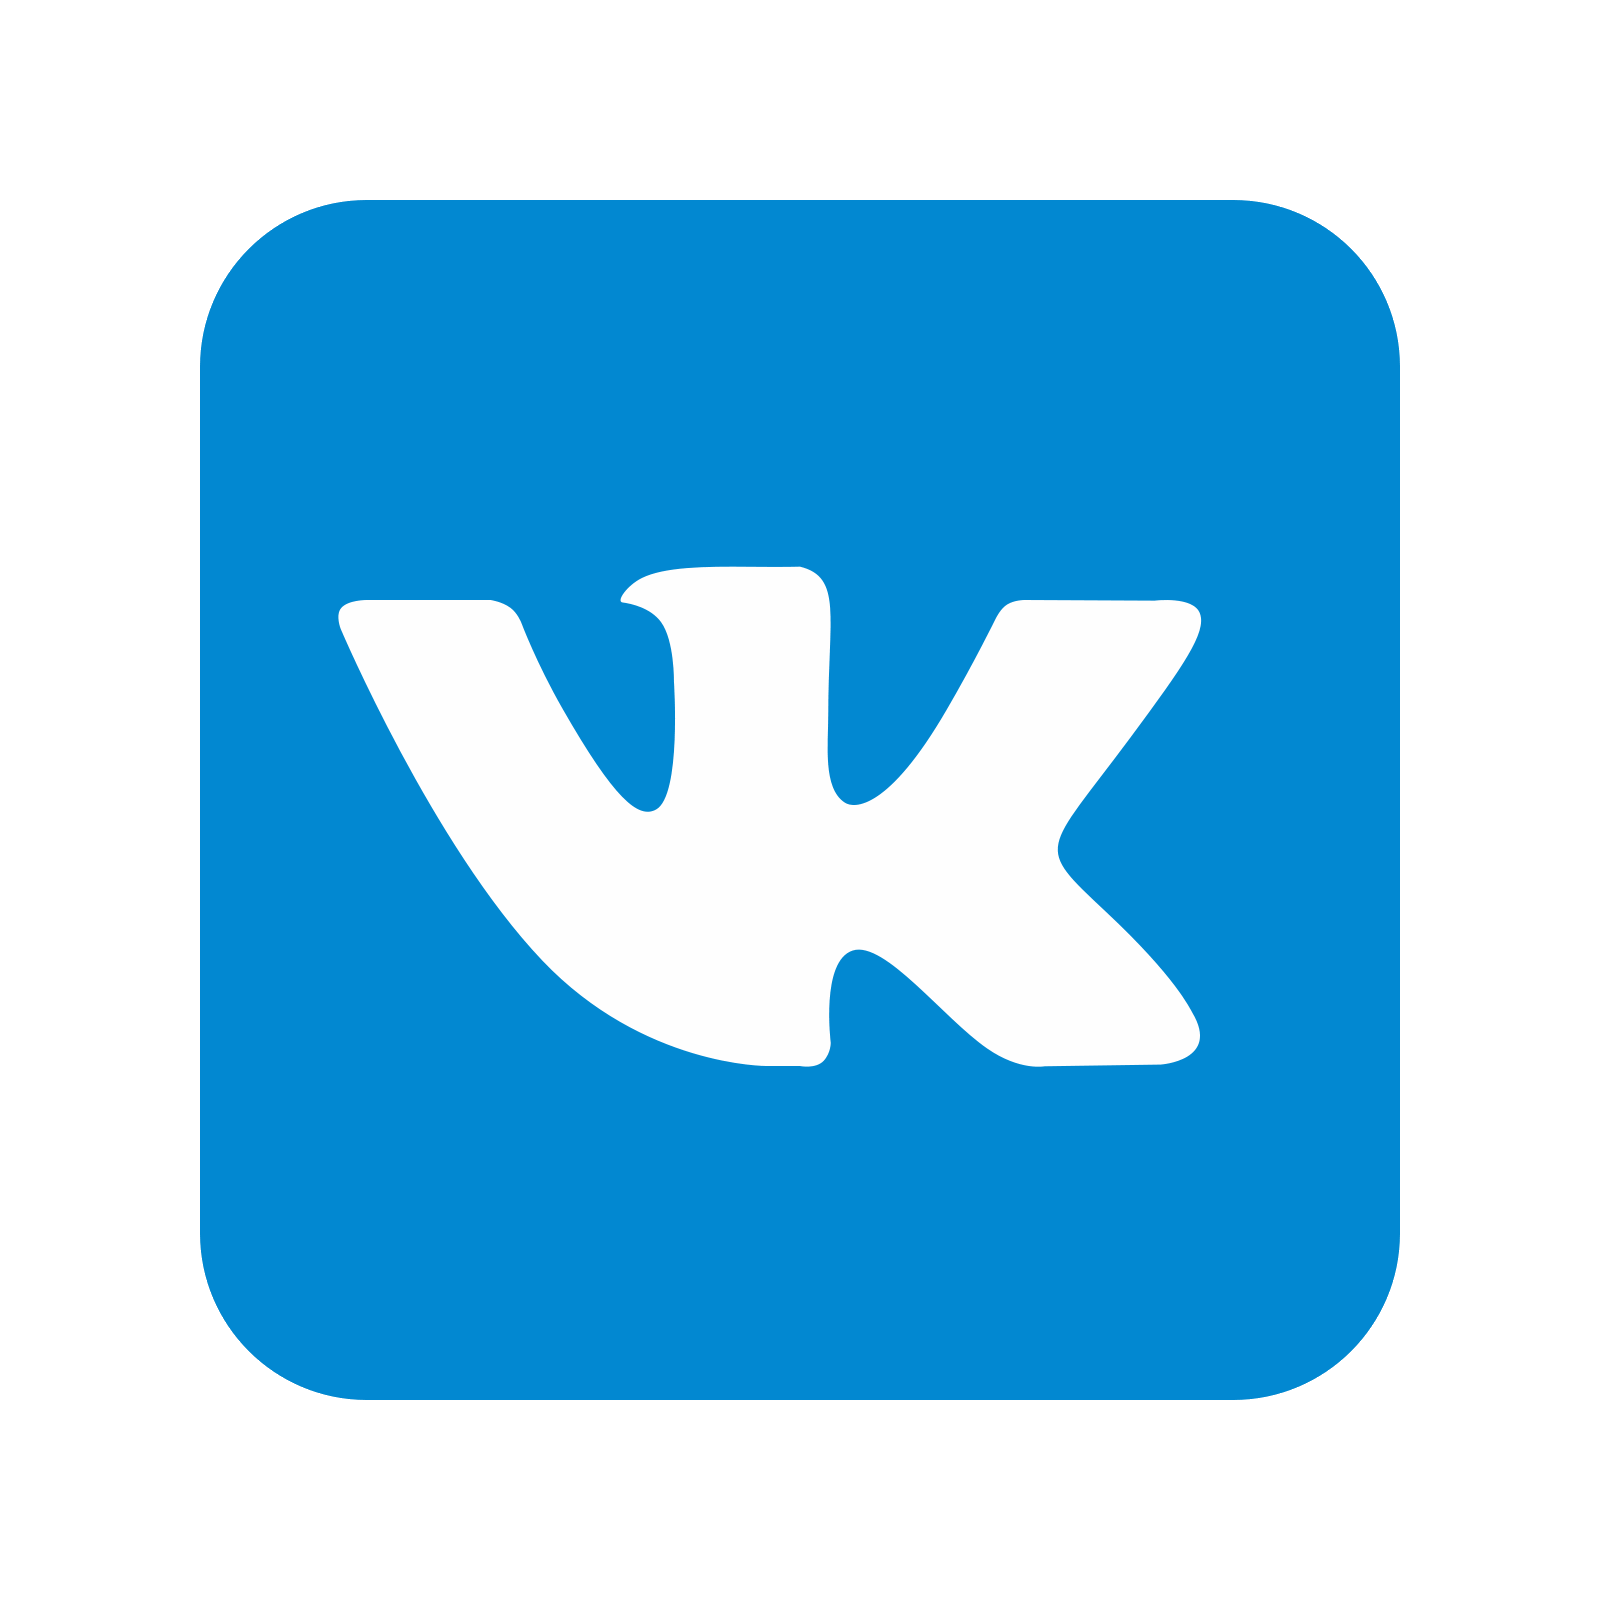 Logotipo da Vkontakte